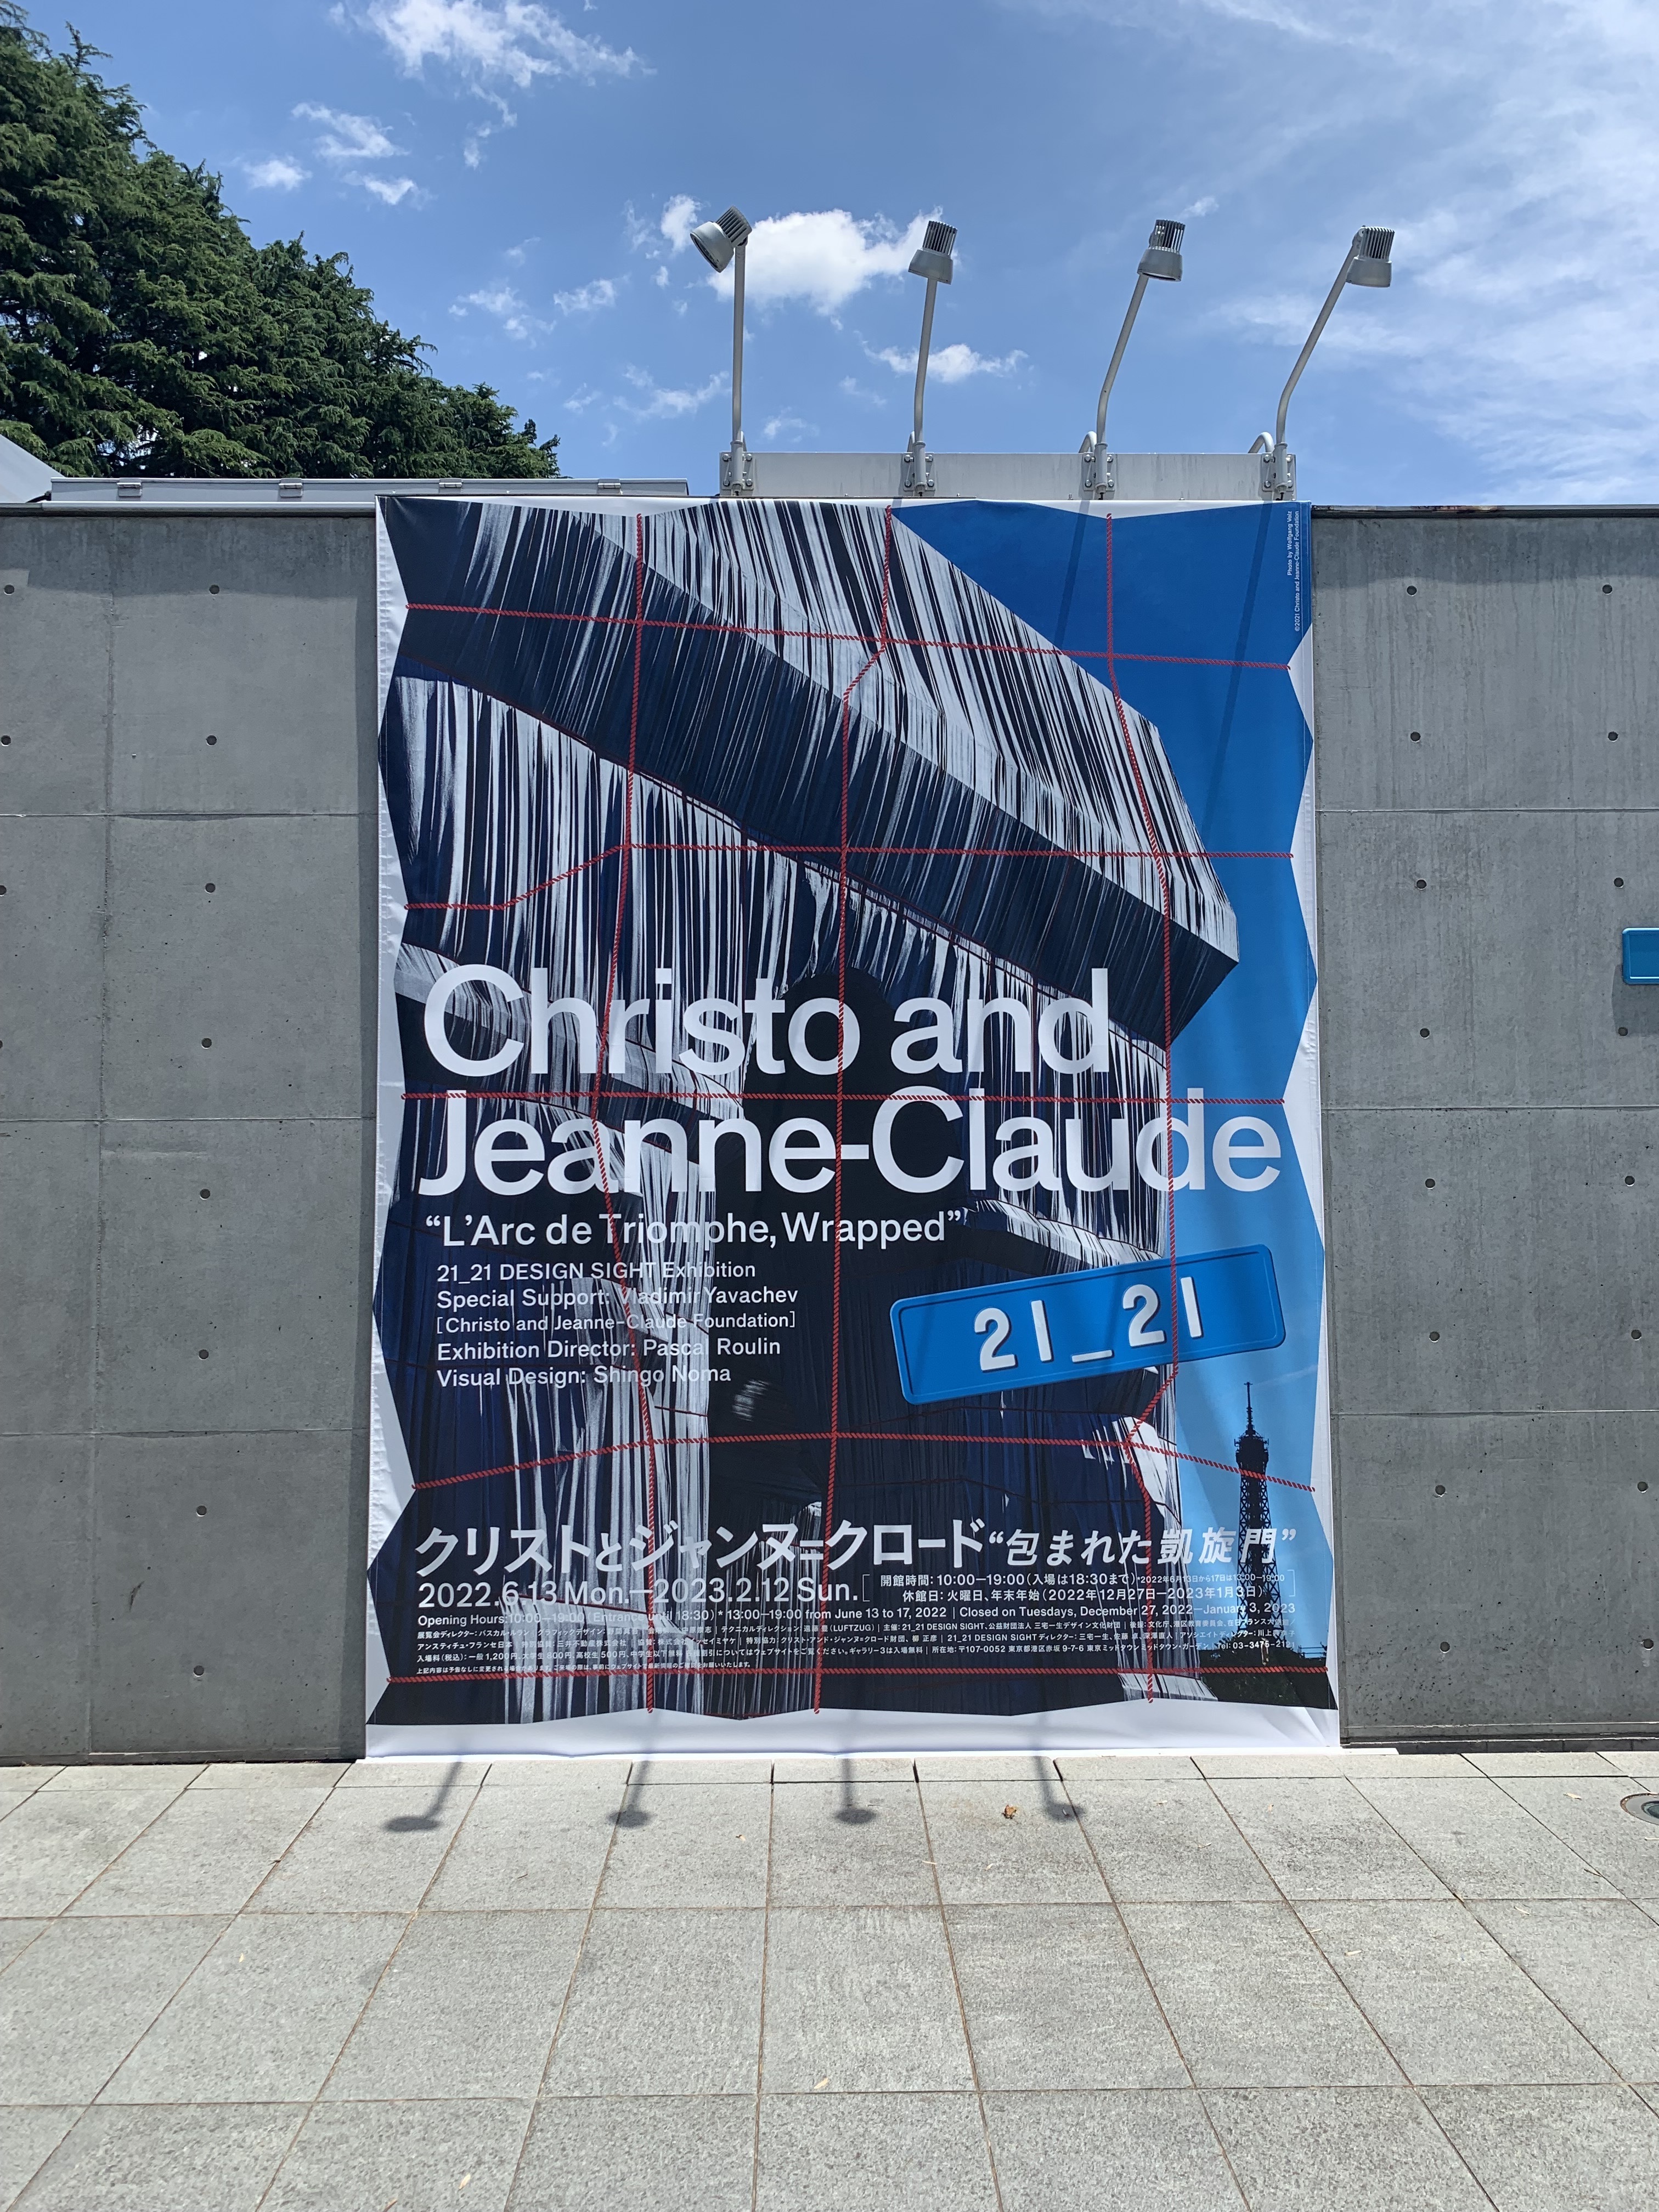 構想から60年 凱旋門を包んだアートプロジェクトを紹介 21 21 Design Sight クリストとジャンヌ クロード 包まれた凱旋門 展レポート Tokyo Art Beat